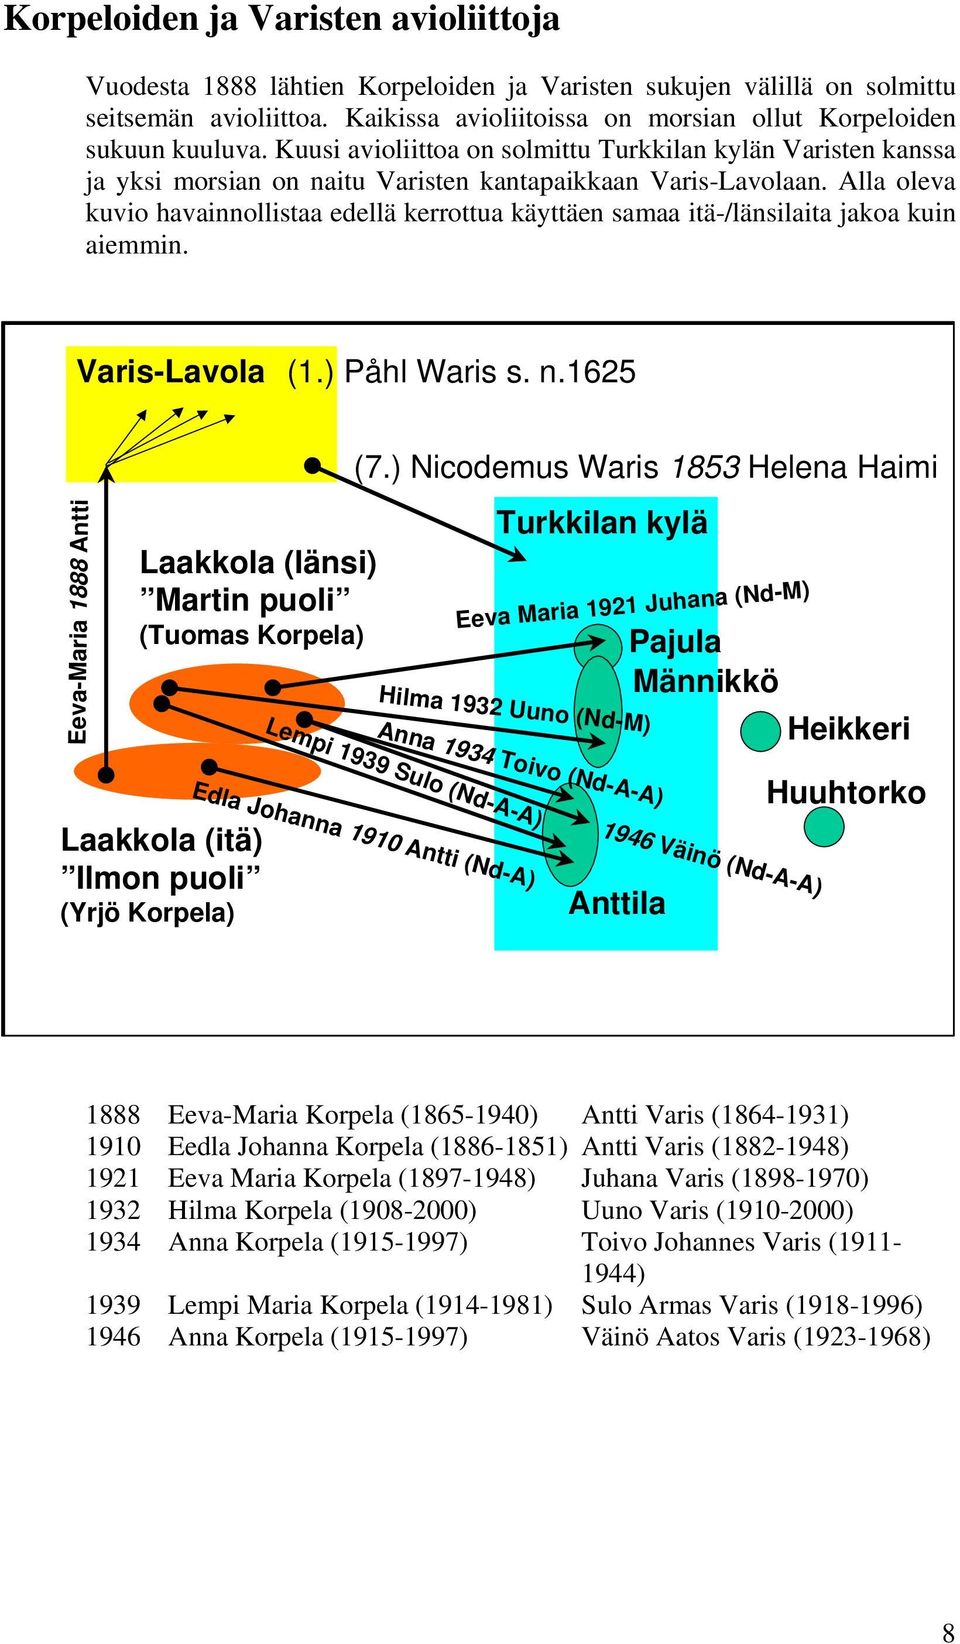 Alla oleva kuvio havainnollistaa edellä kerrottua käyttäen samaa itä-/länsilaita jakoa kuin aiemmin. Varis-Lavola (1.) Påhl Waris s. n.